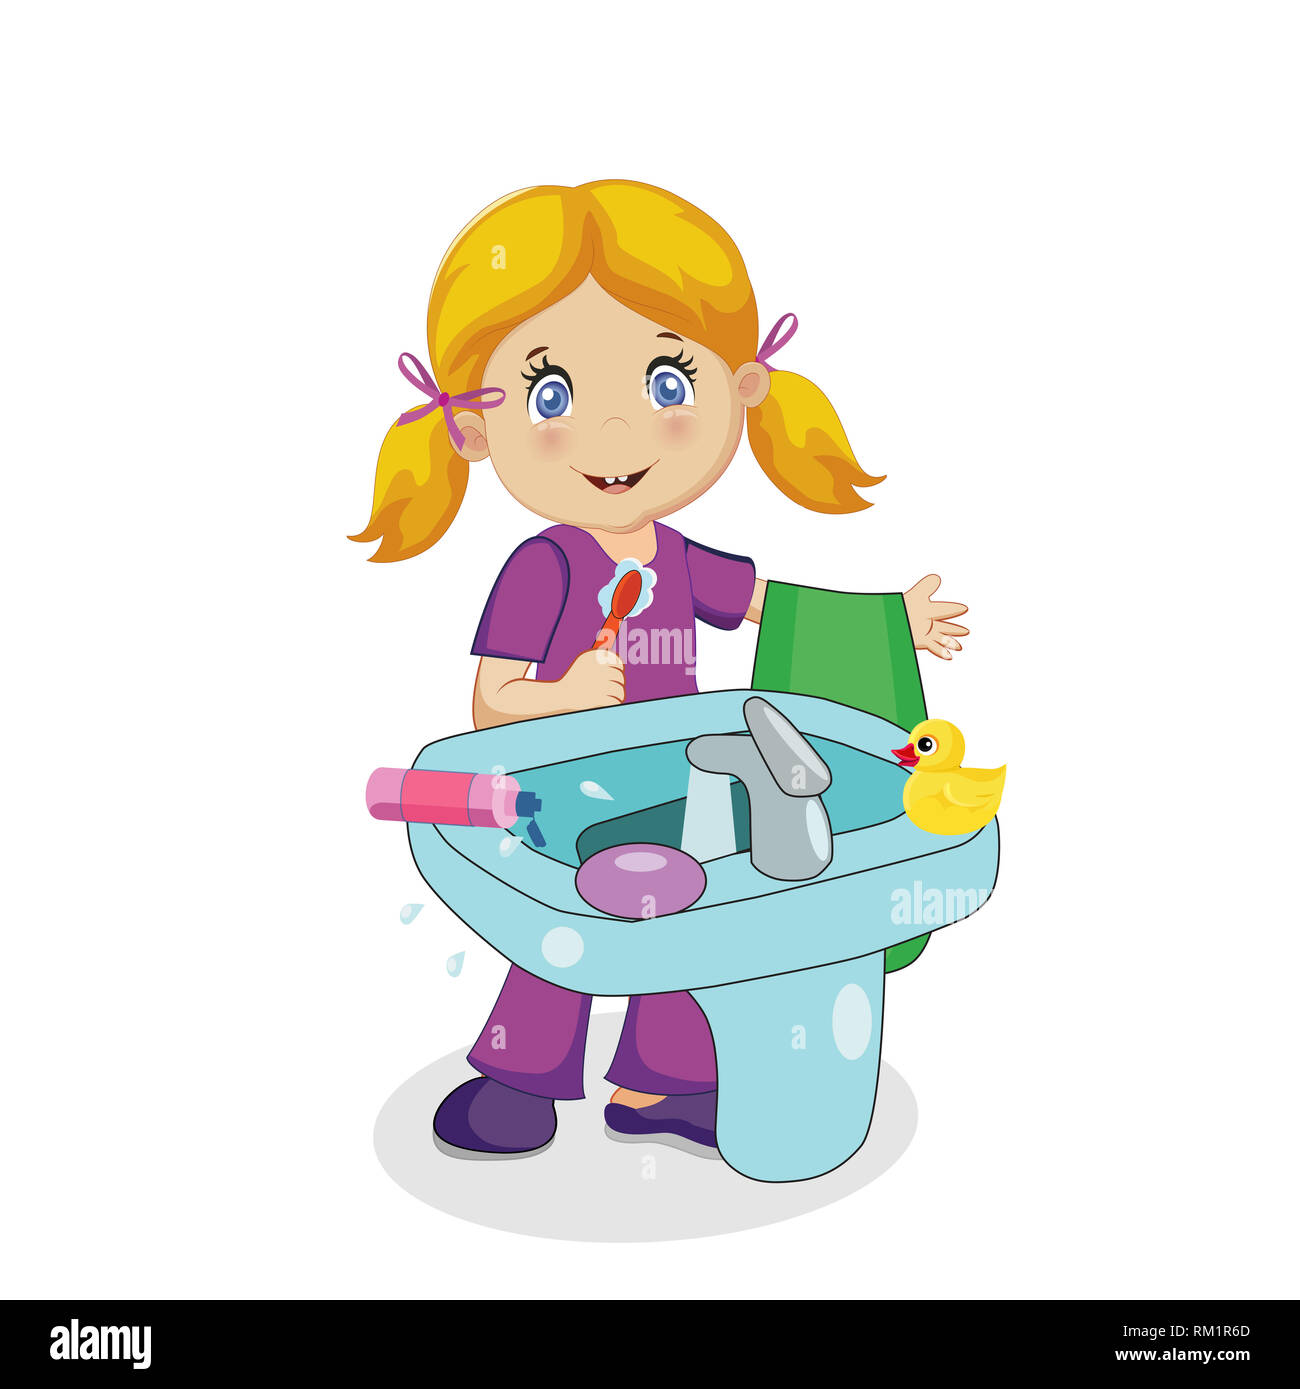 Cute Smiling Baby Girl personnage avec des cheveux blonds se brosser les dents à l'évier de salle de bains isolé sur fond blanc. Brosse à dent et une serviette à la main. Enfant Banque D'Images